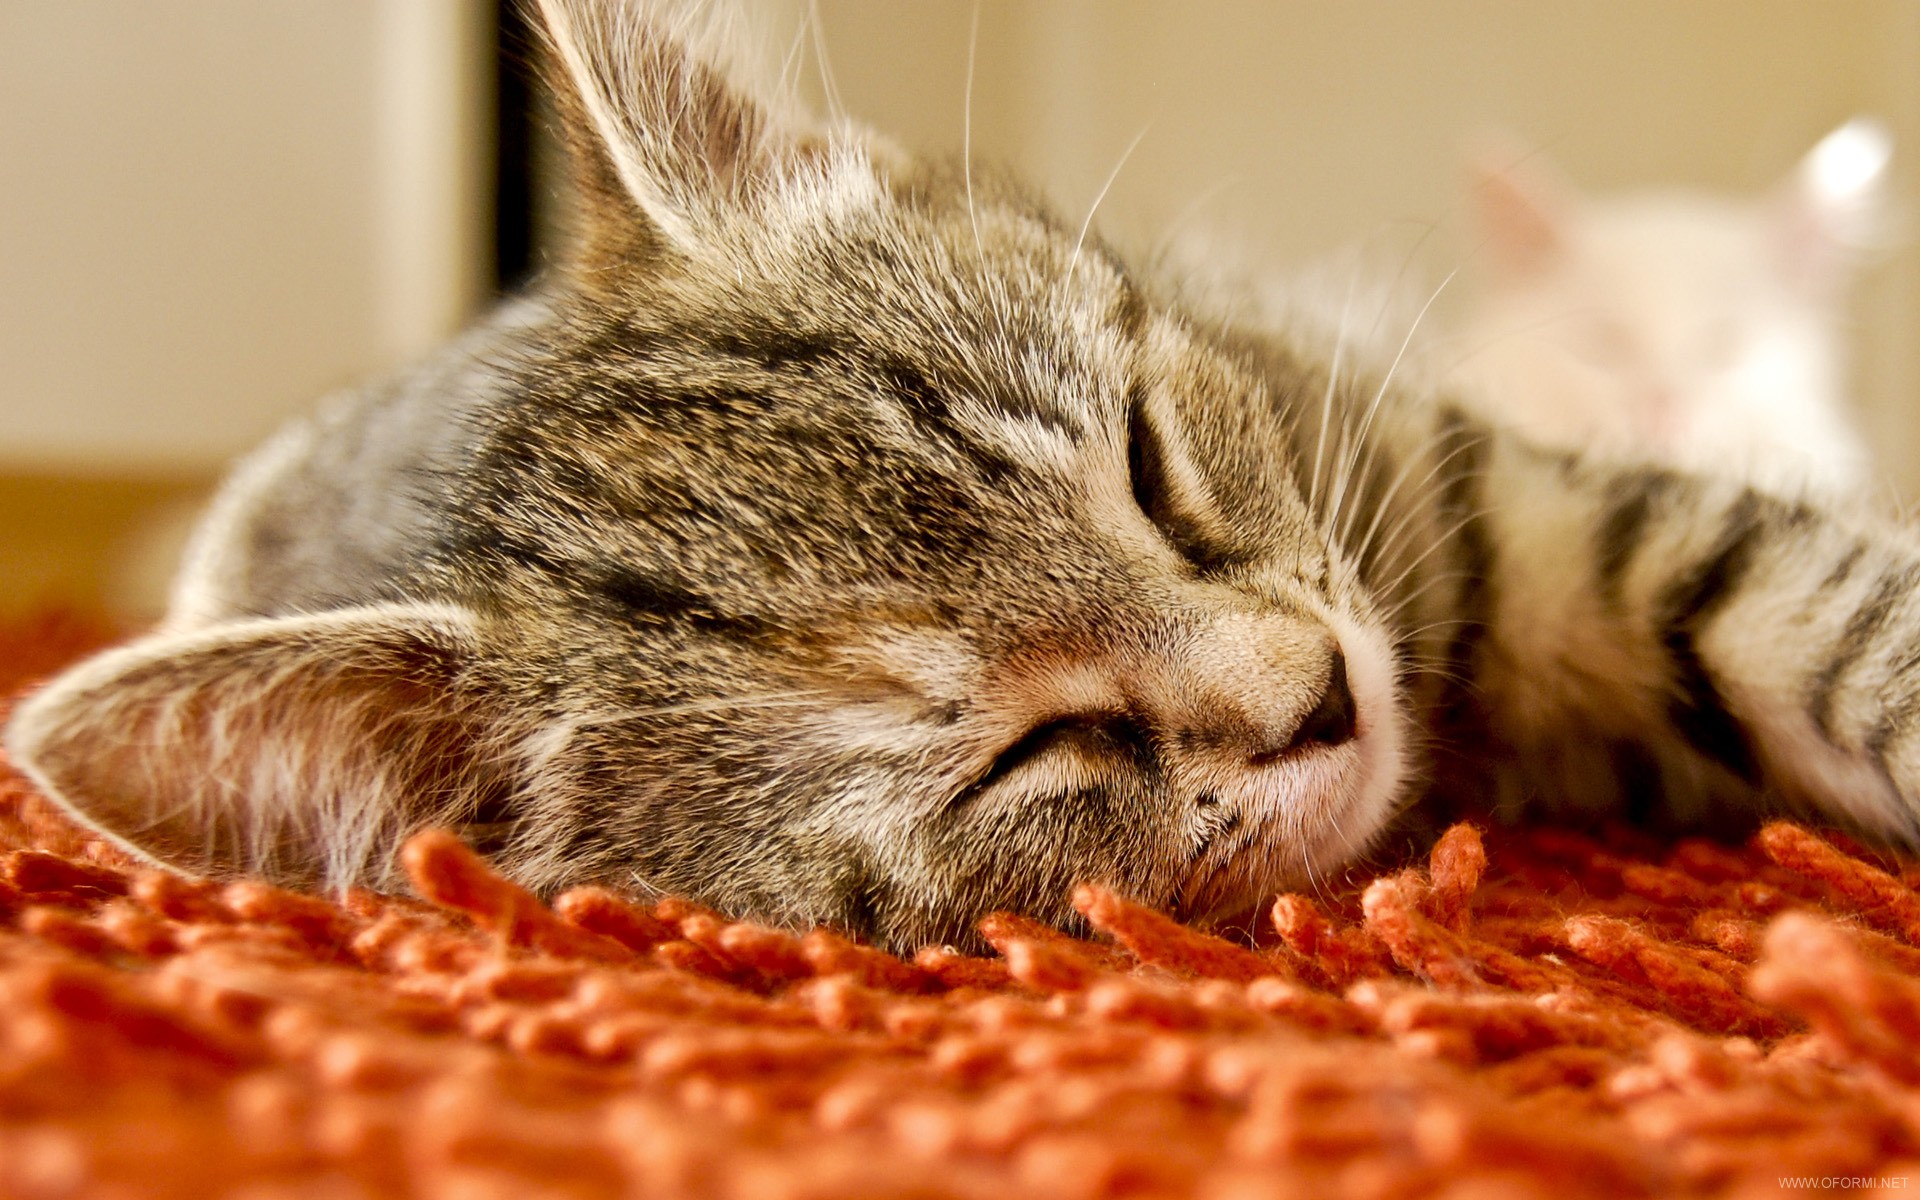 Картинки добрый вечер сладкий. Спящий кот. Доброй ночи котик. Спокойный кот. Спокойной ночи котики.